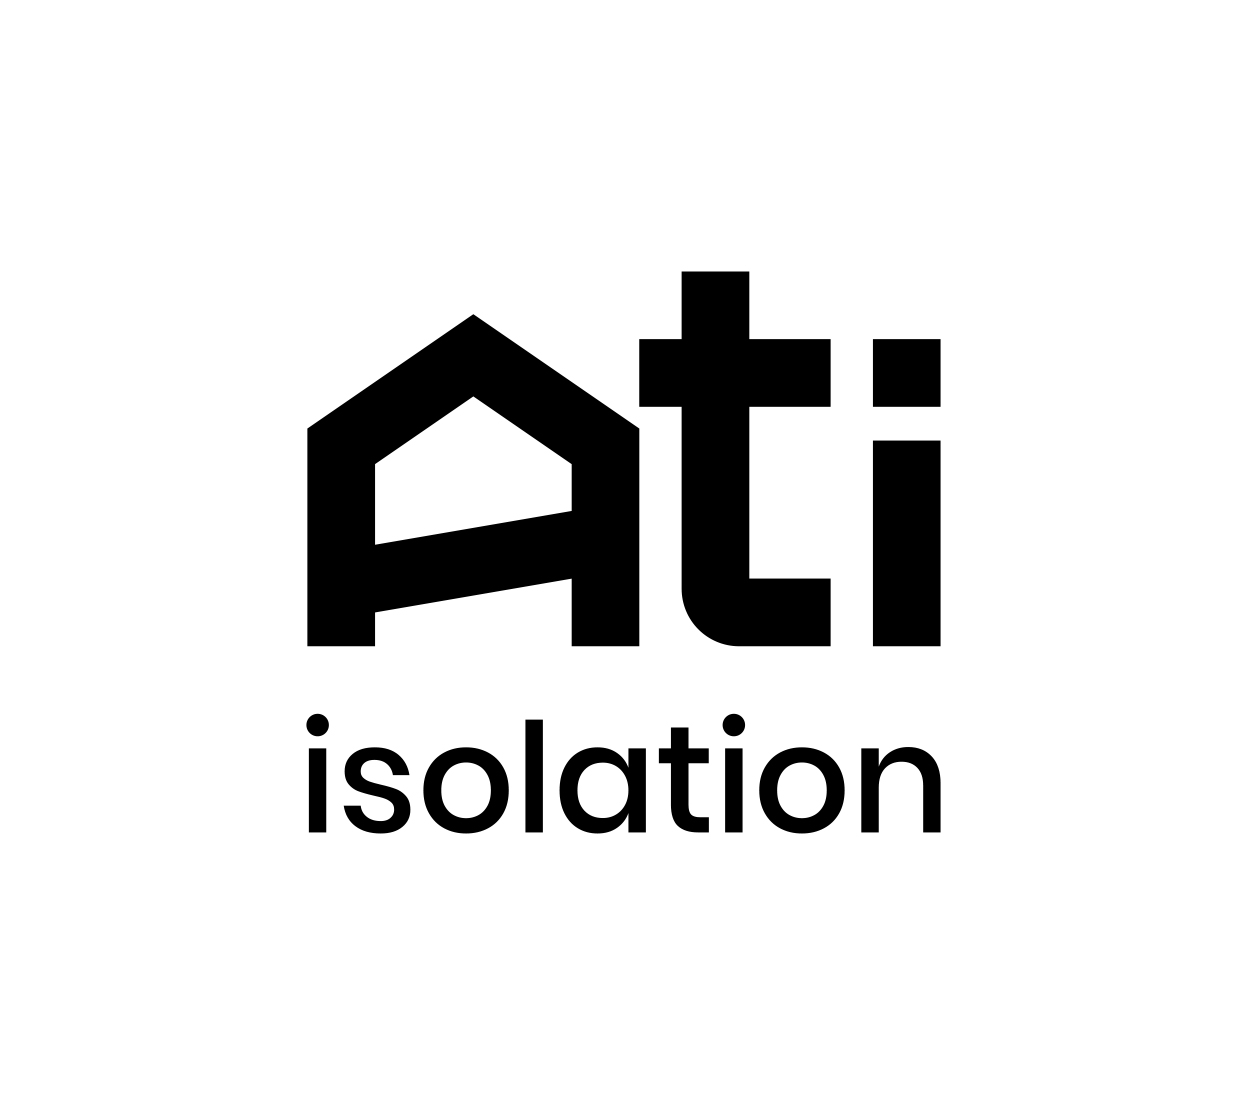 ATI ISOLATION